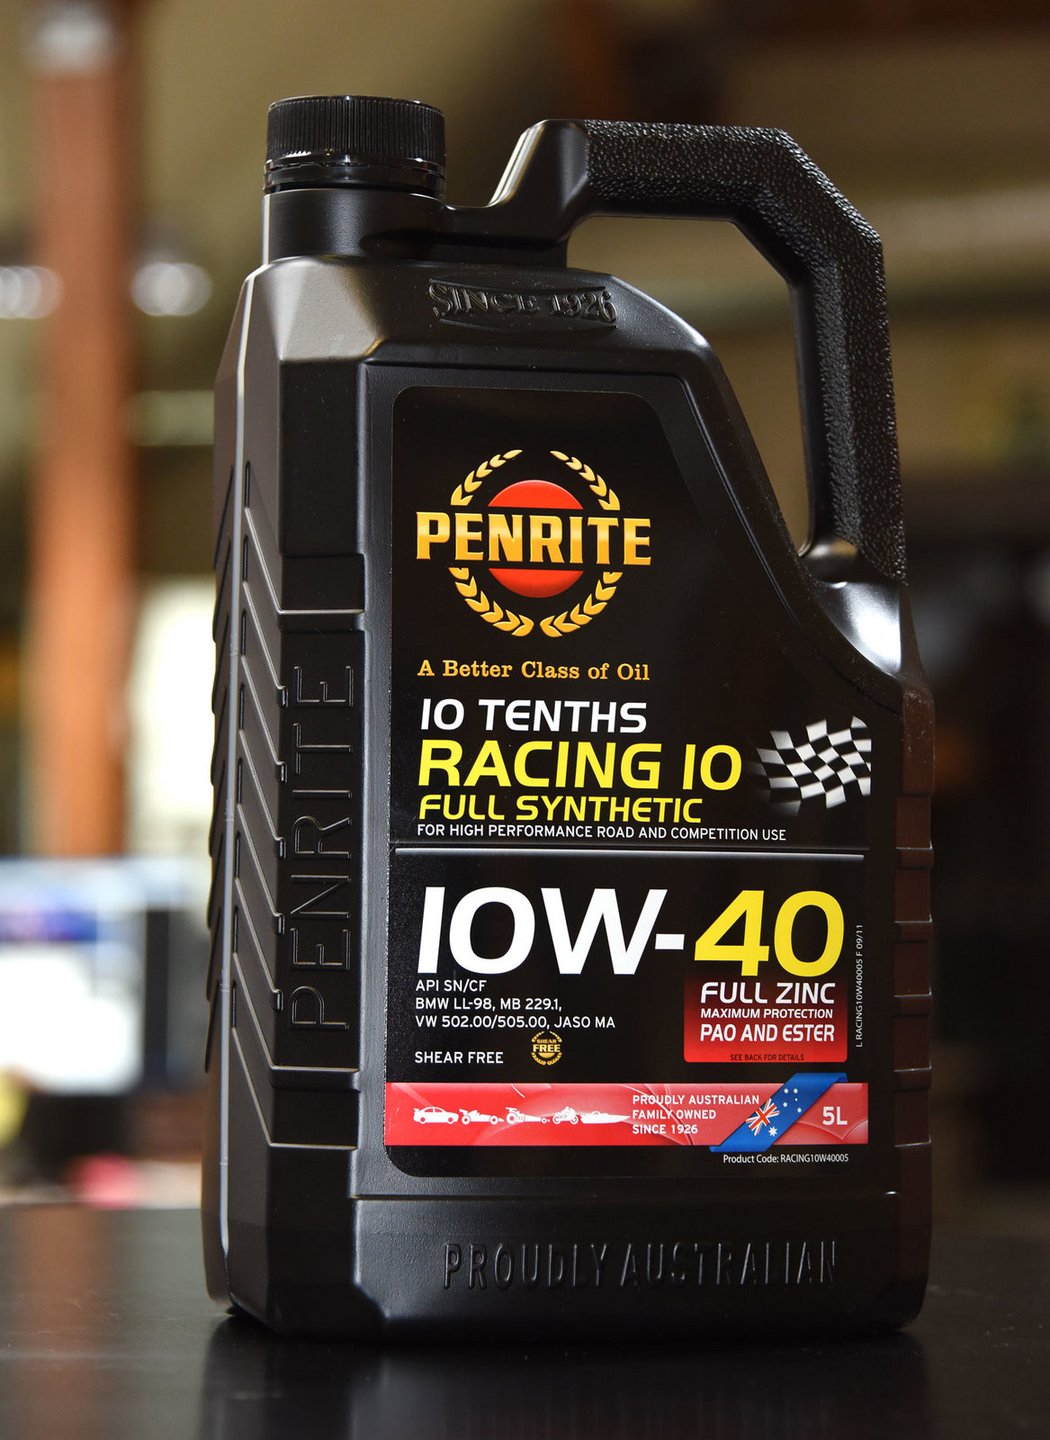 Penrite Racing 10 10W-40